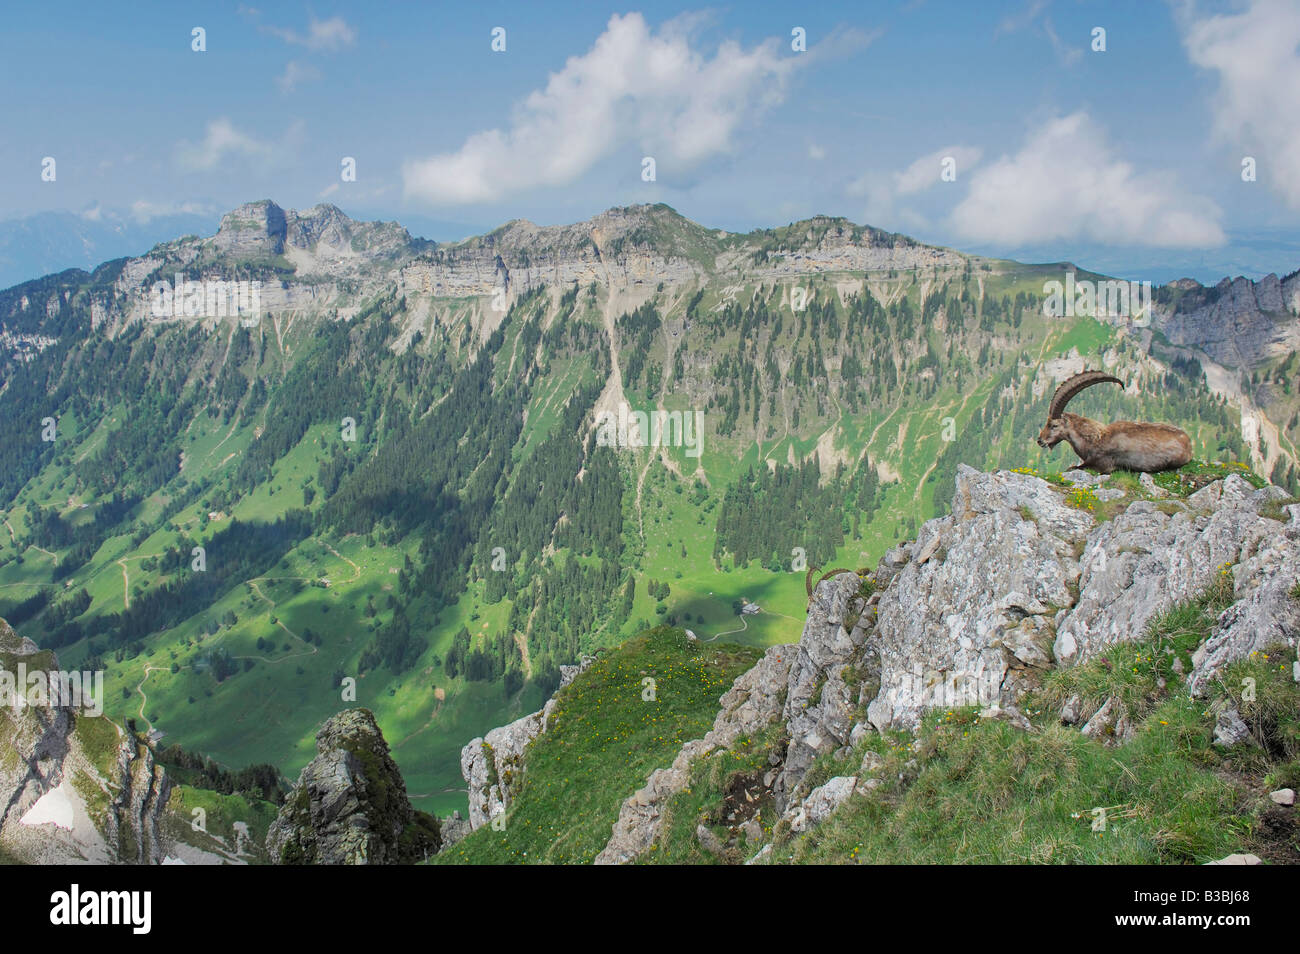 Stambecco delle Alpi (Capra ibex), Adulto su una mensola con Alpi in background, Niederhorn, Interlaken, Svizzera Foto Stock